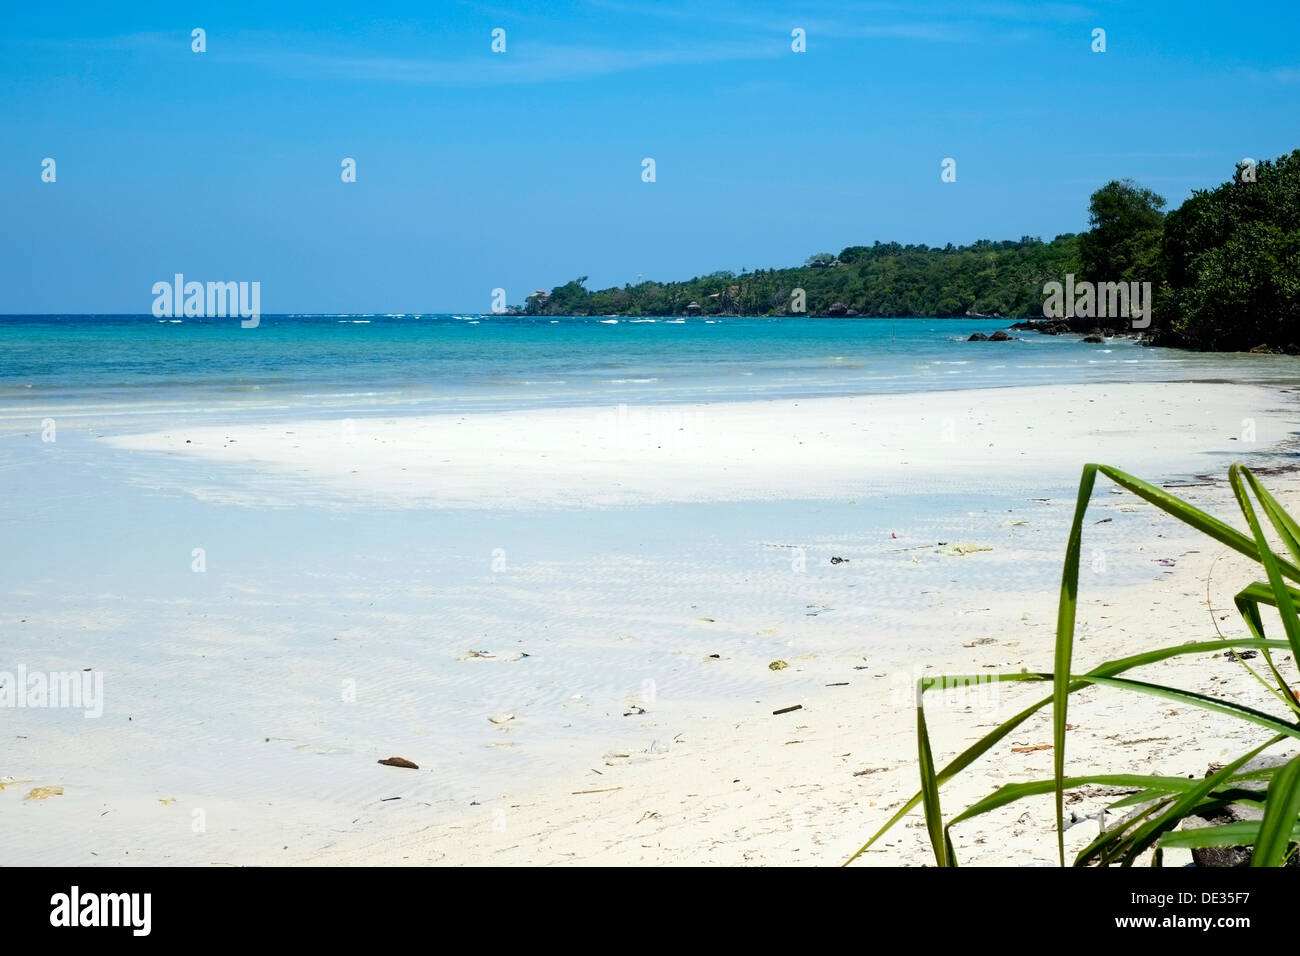 Deserta spiaggia incontaminata e acque cristalline dell'isola Karimunjawa java indonesia Foto Stock